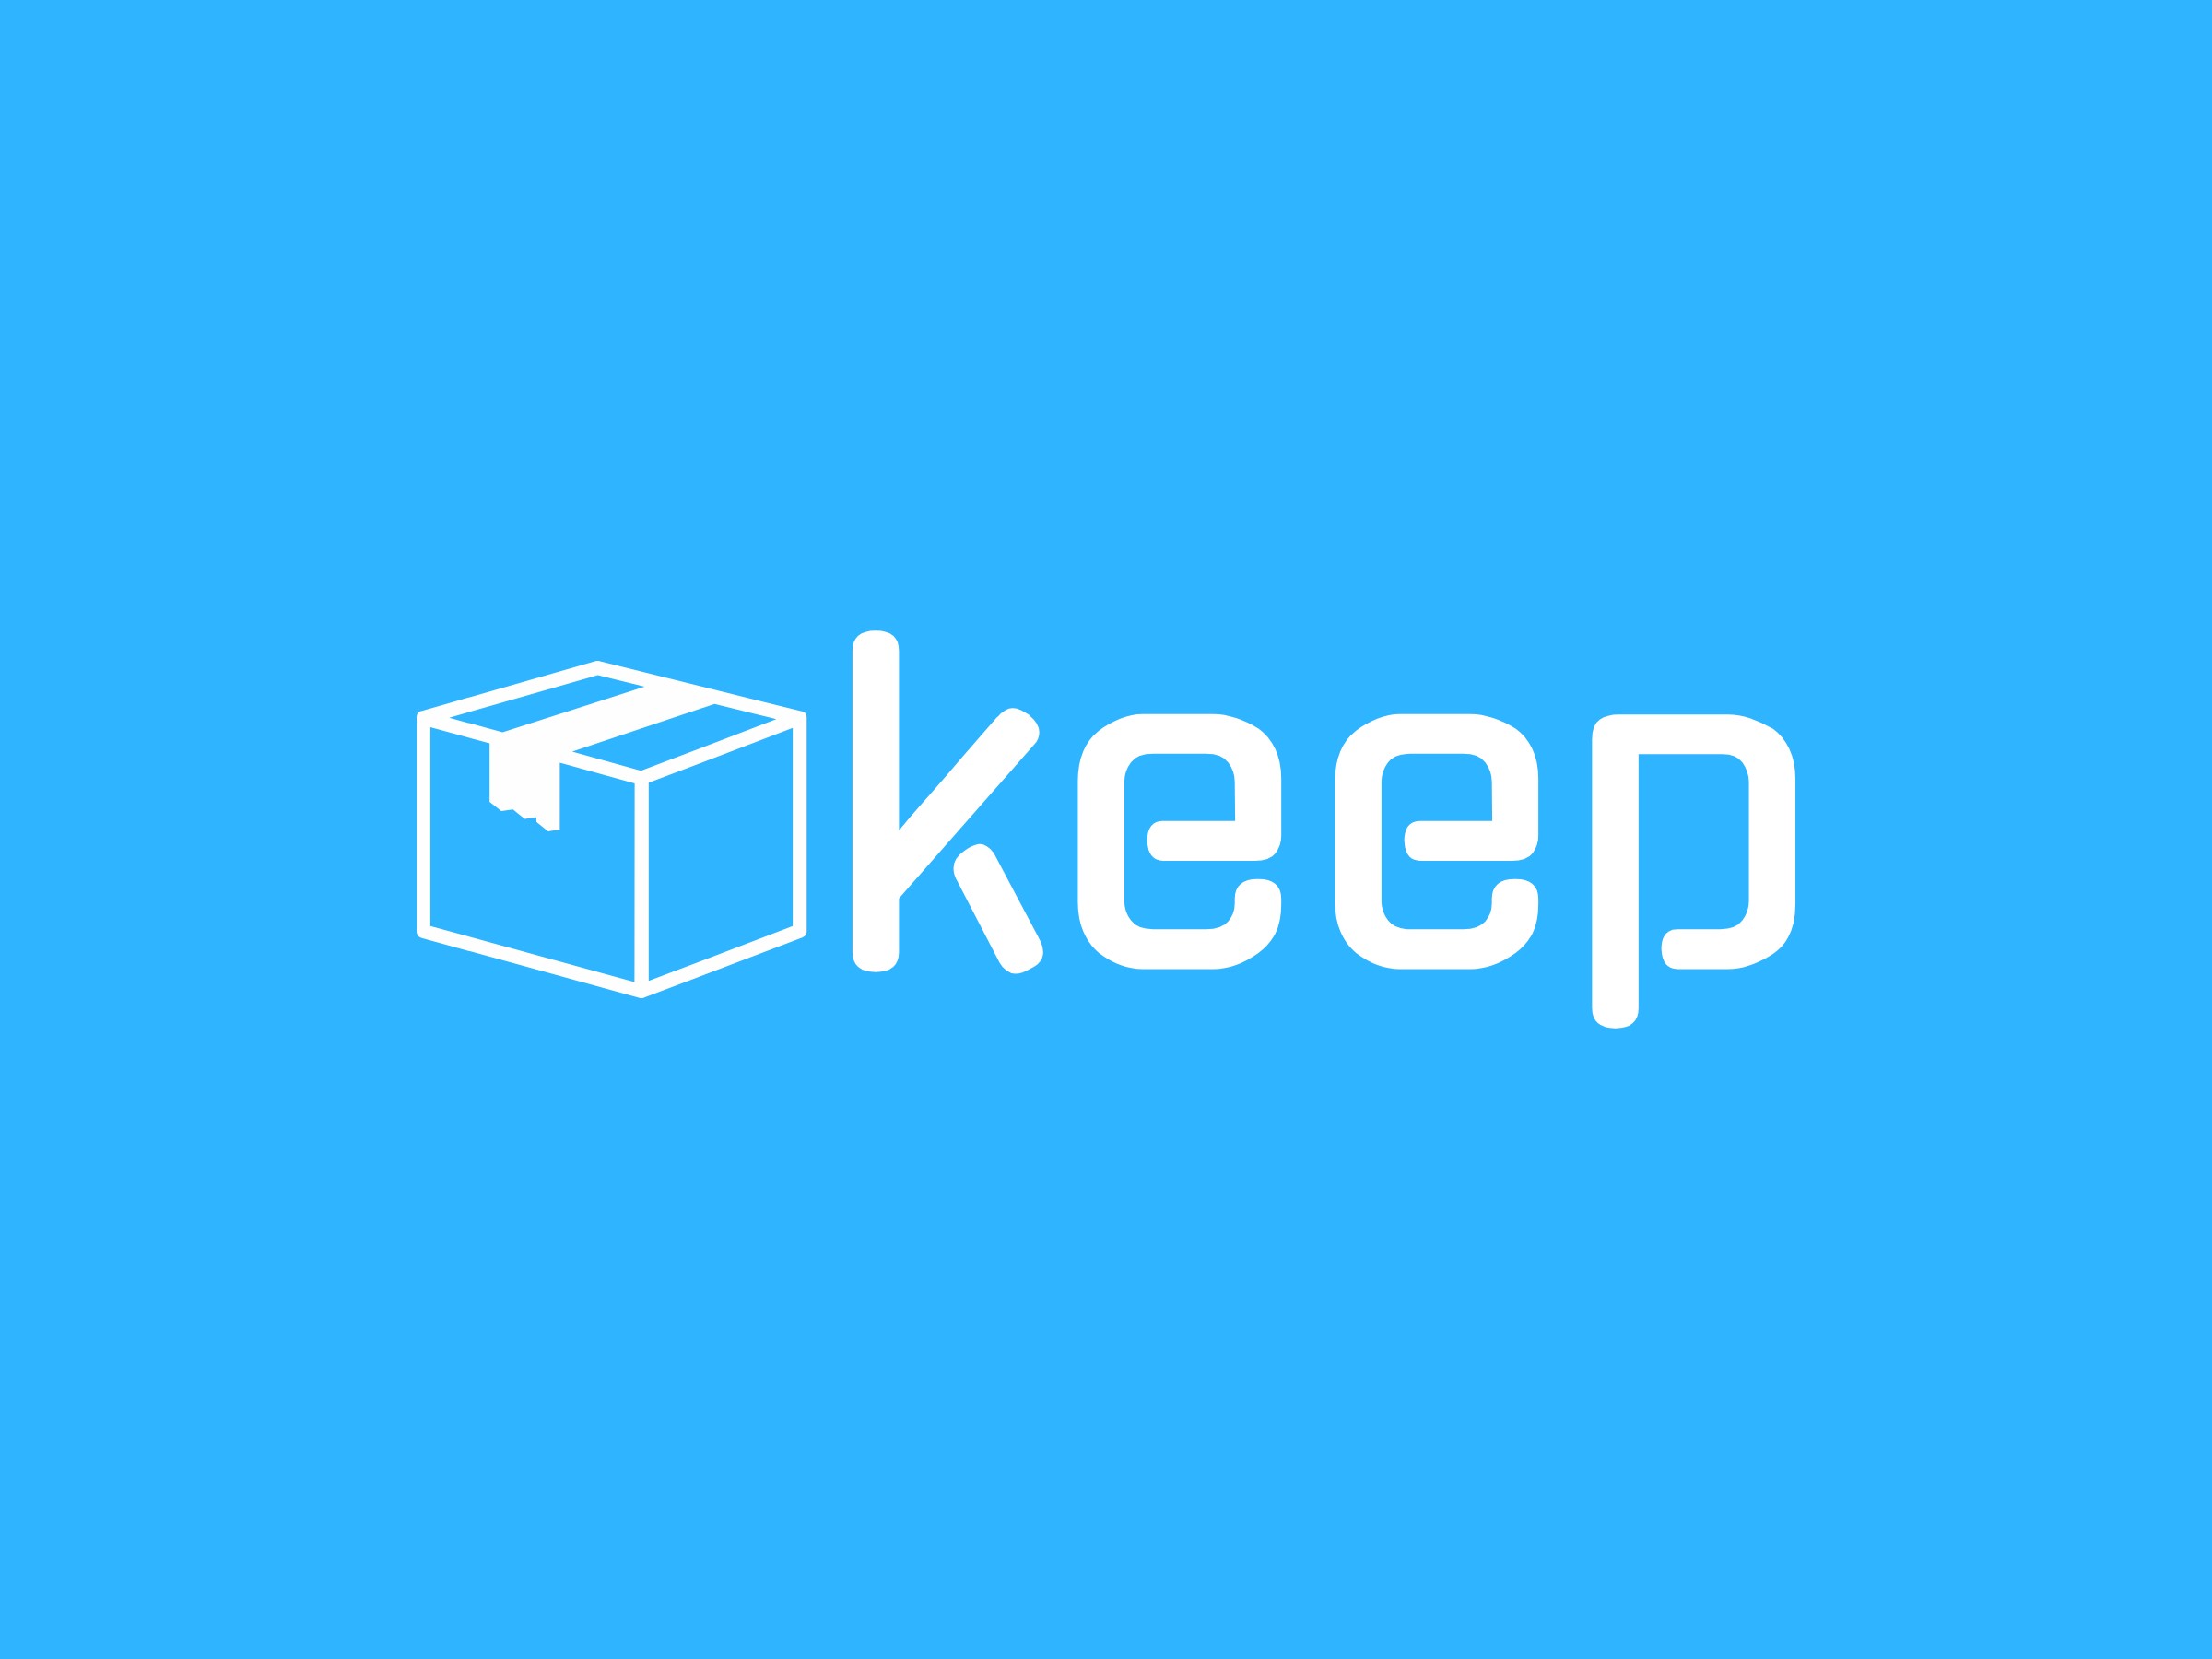 keep - 